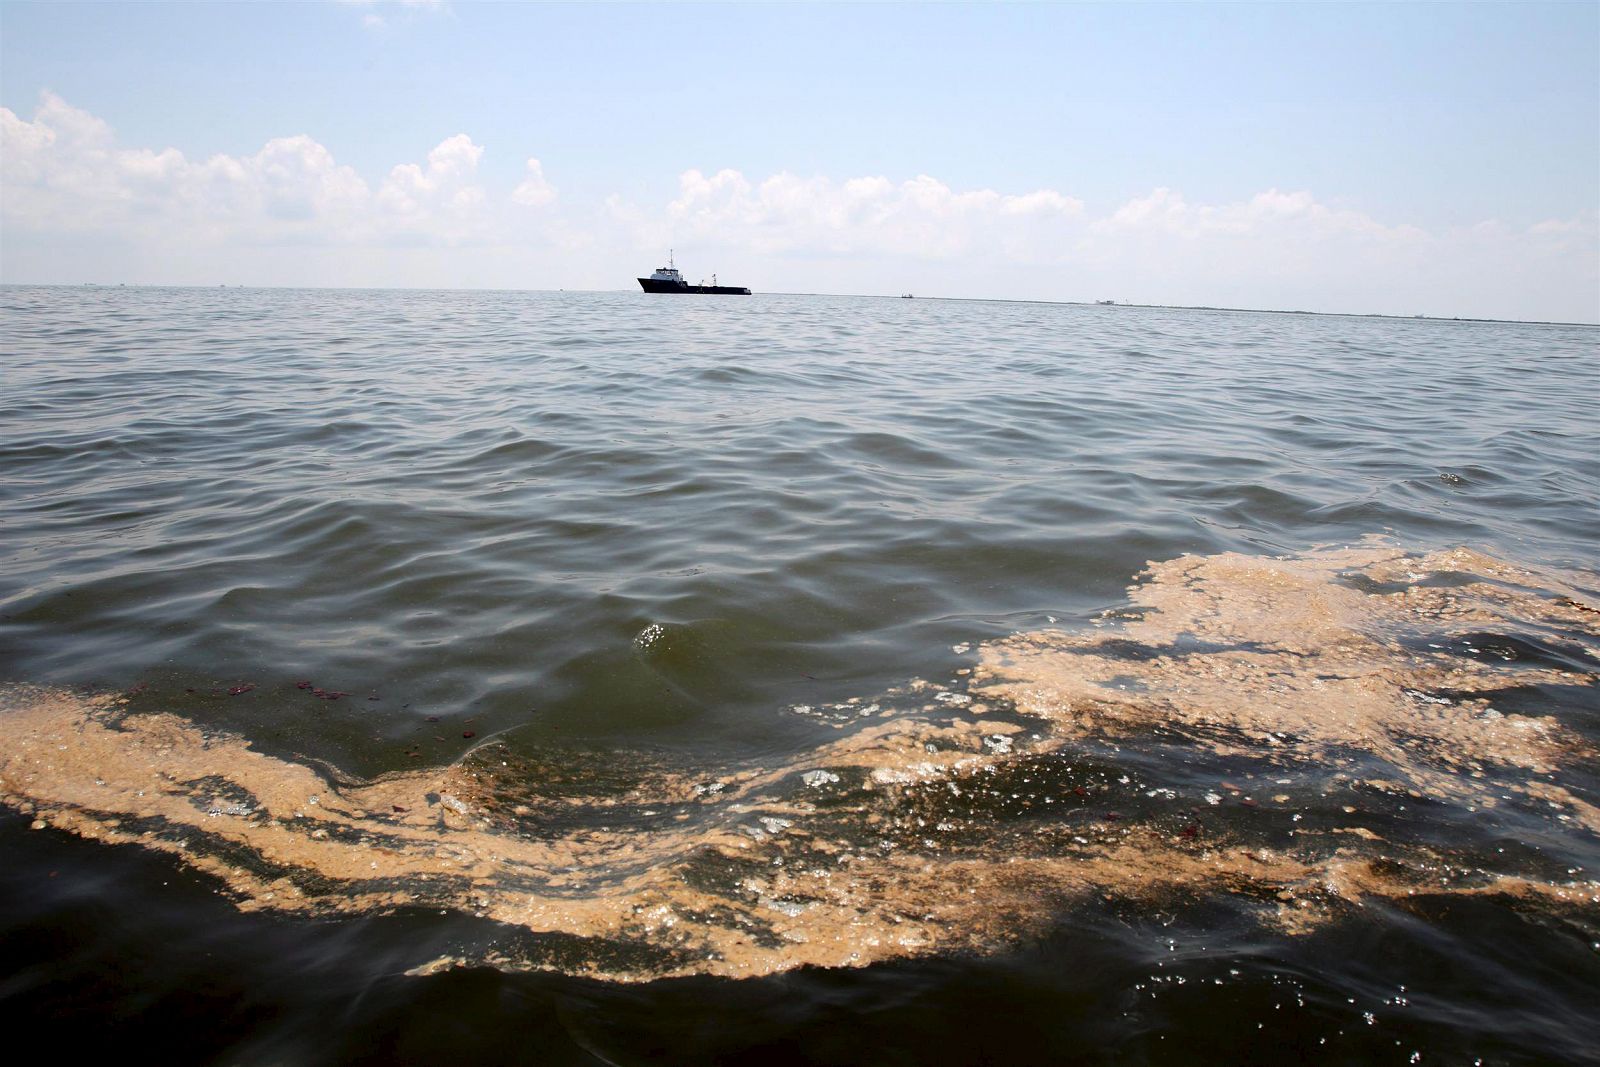 Fotografía facilitada por Greenpeace que muestra una gran mancha de petróleo en la superficie del agua en la Bahía Barataria, en Luisiana.